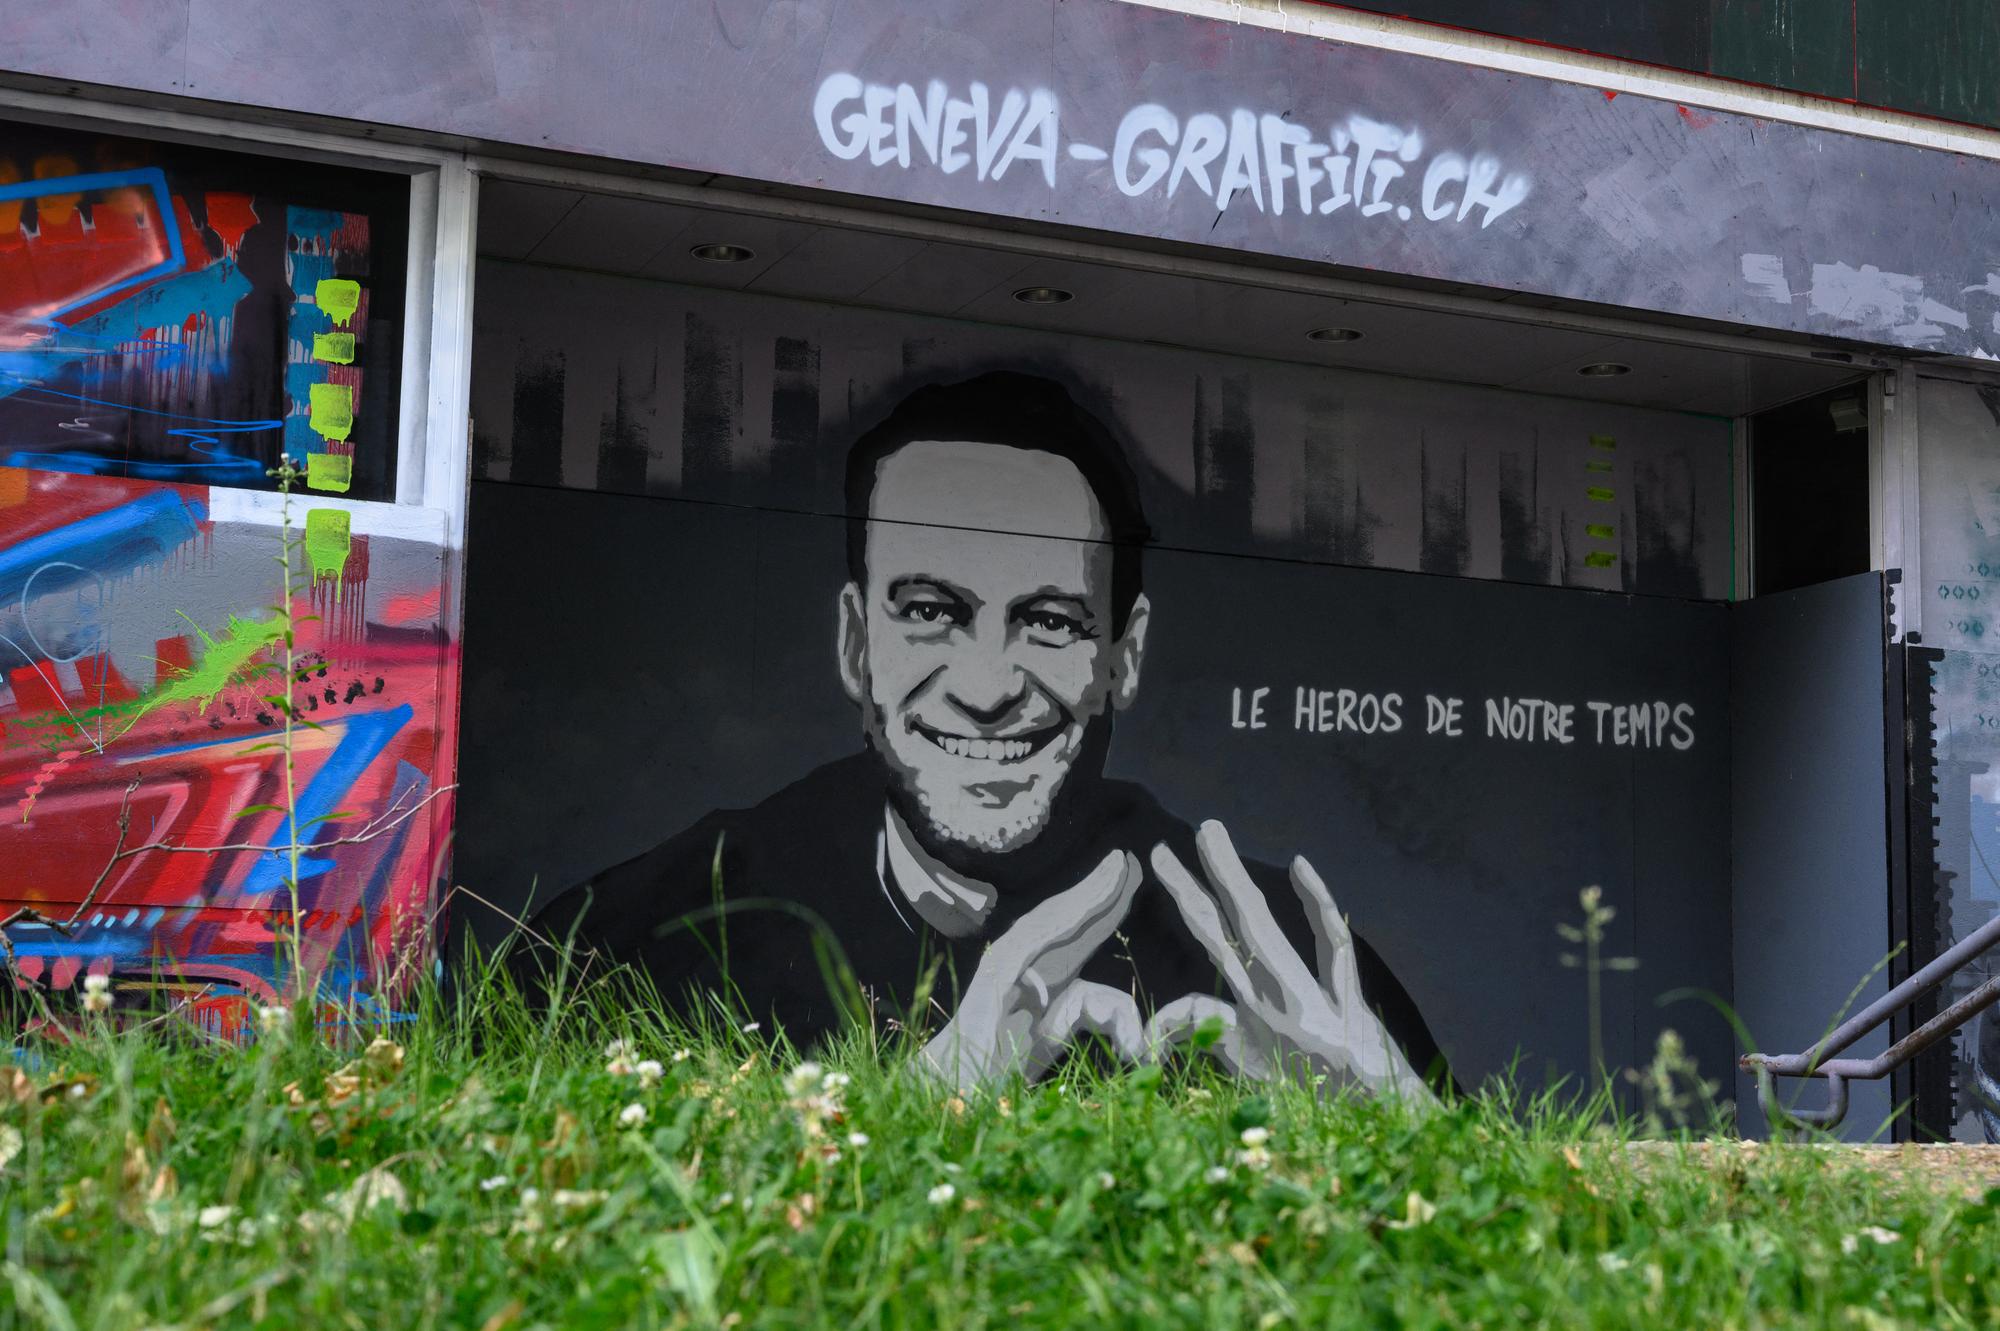 Un graffiti représentant l'opposant russe Alexeï Navalny, le 14 juin 2021 à Genève. [AFP - Fabrice Coffrini]